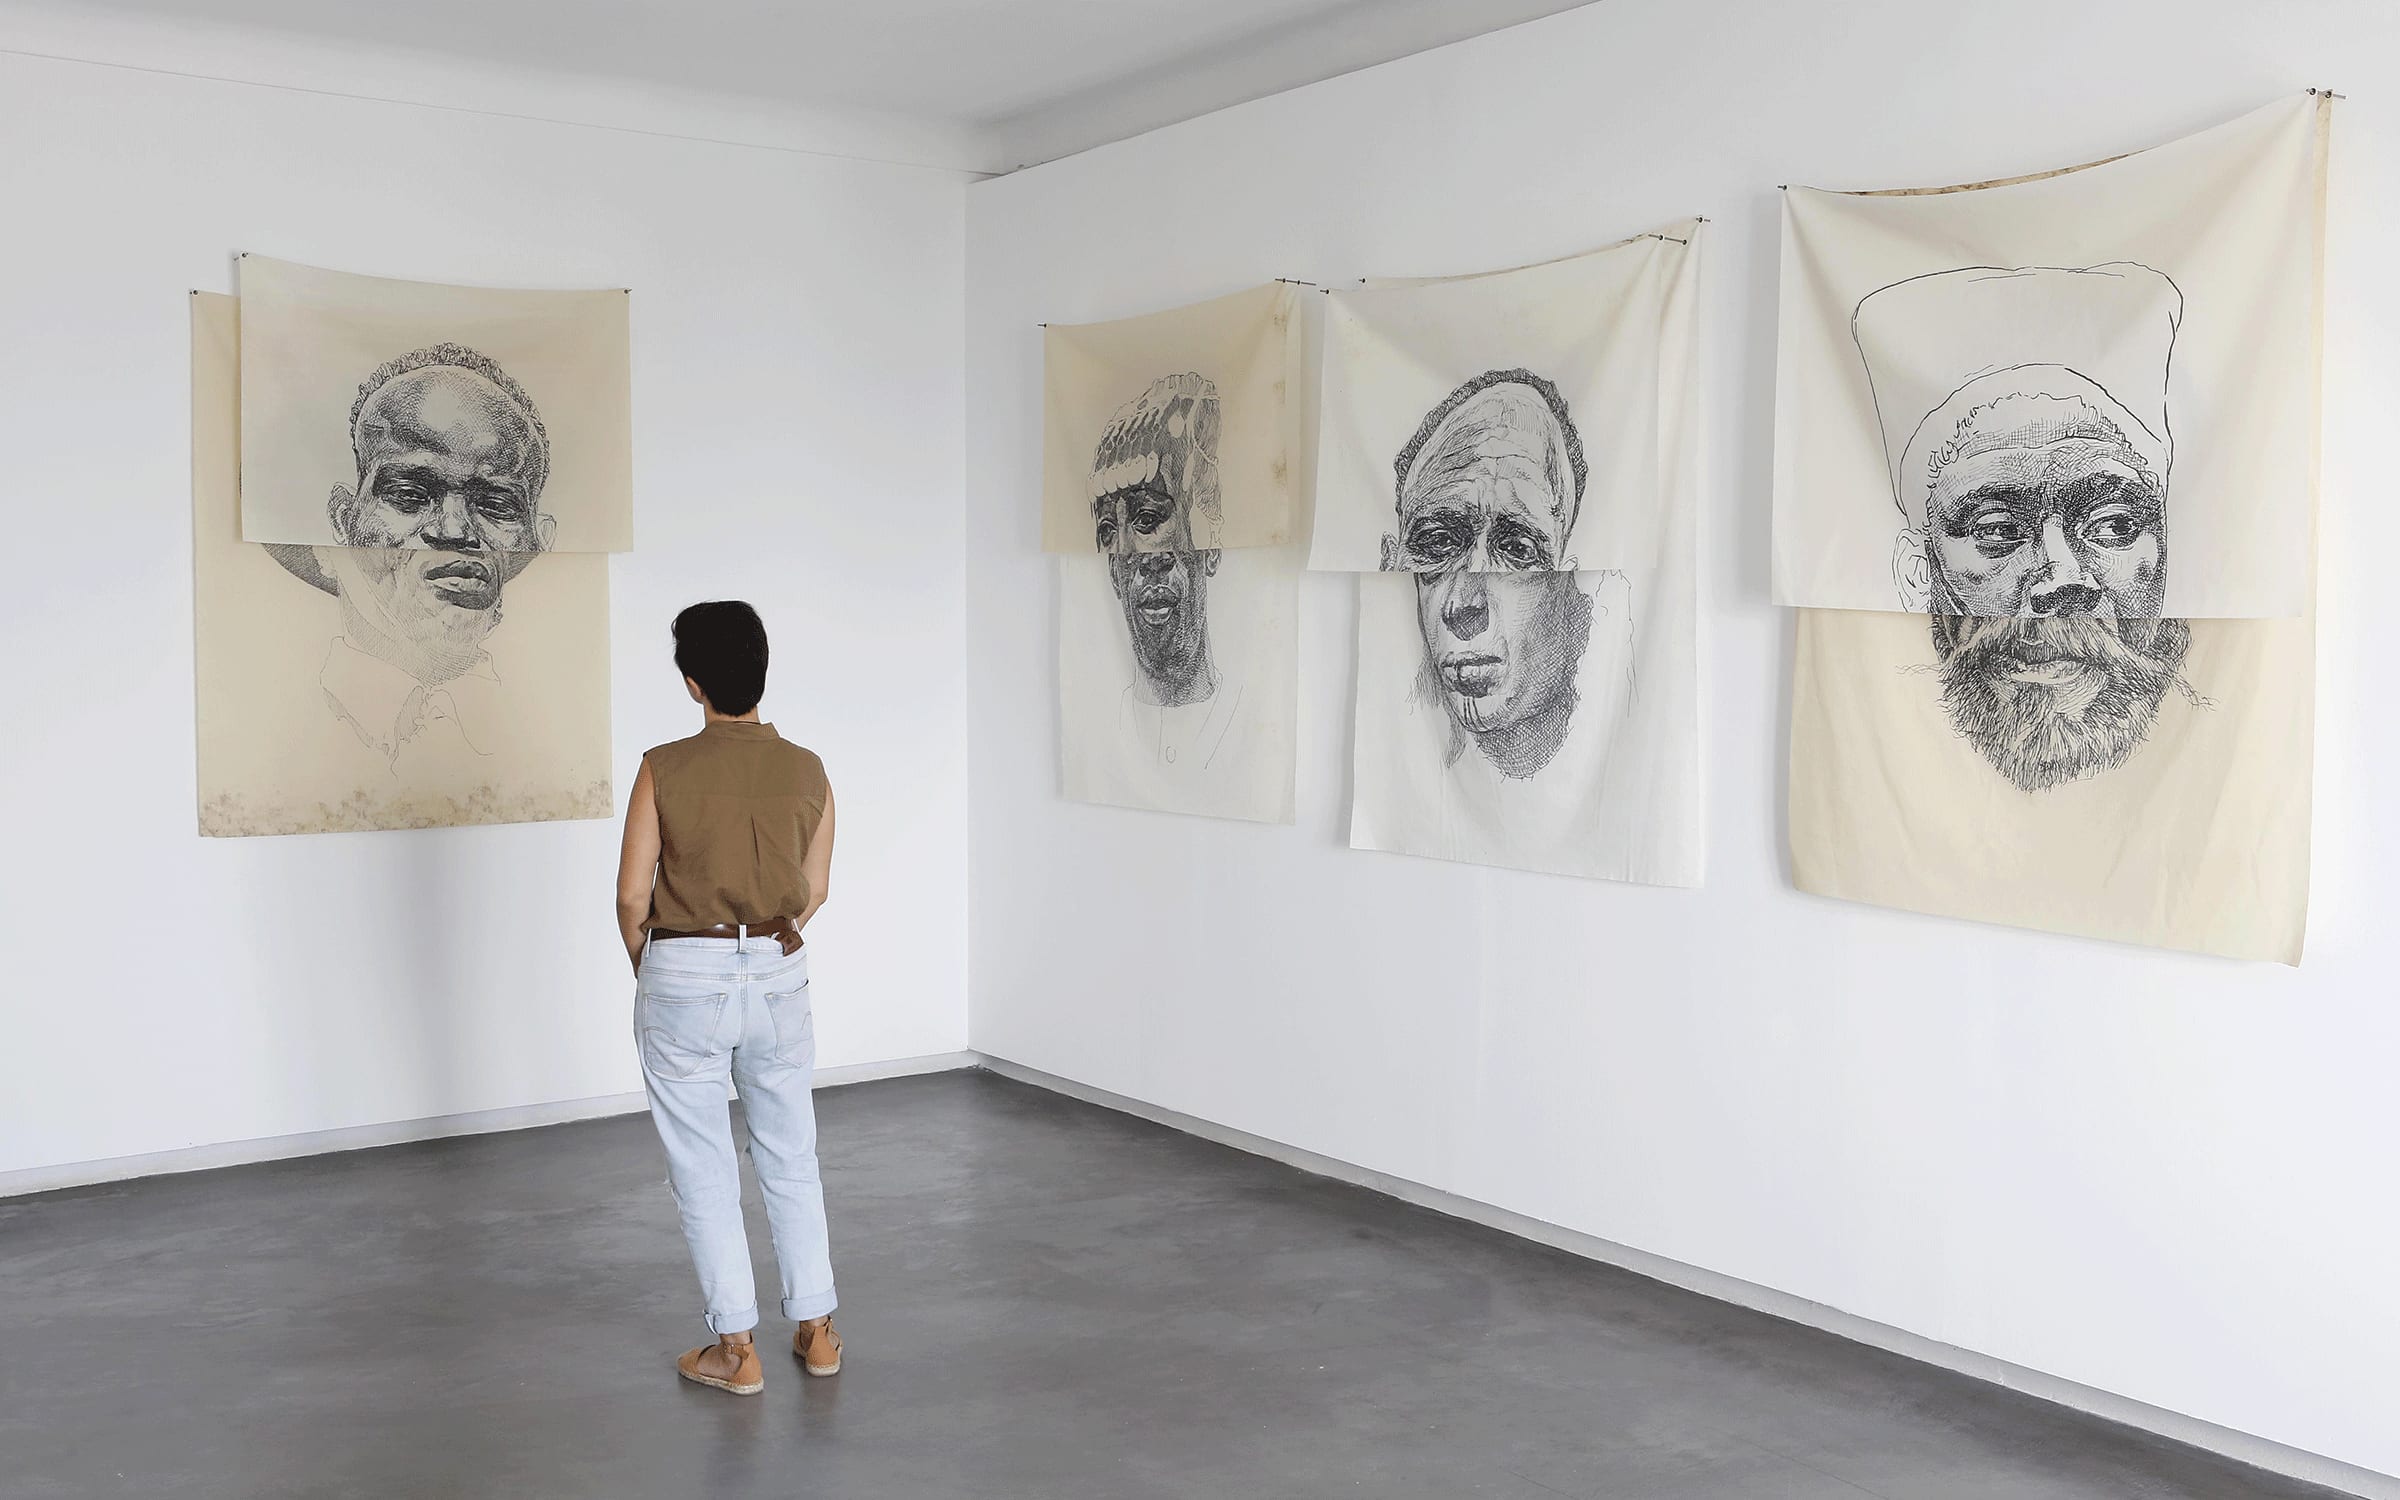 Vue d'installation de l'exposition de Nidhal Chamekh « Nos visages », galerie Selma Feriani, Sidi Bou Saïd, 2019. Avec l'aimable autorisation de l'artiste et de Selma Feriani Gallery.